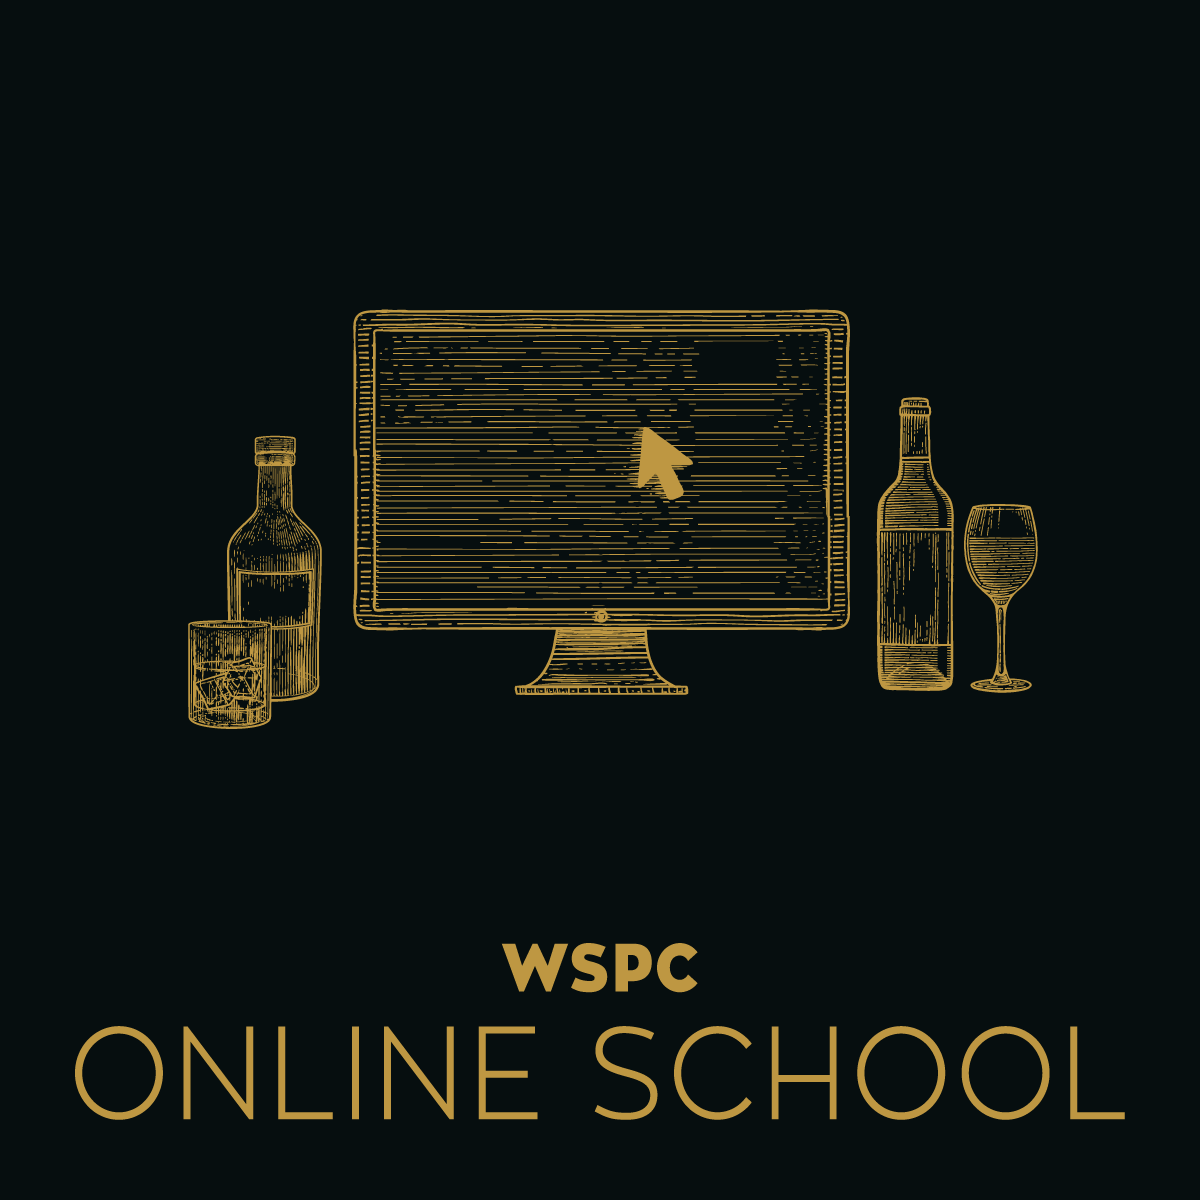 WSPC ONLINE SCHOOL